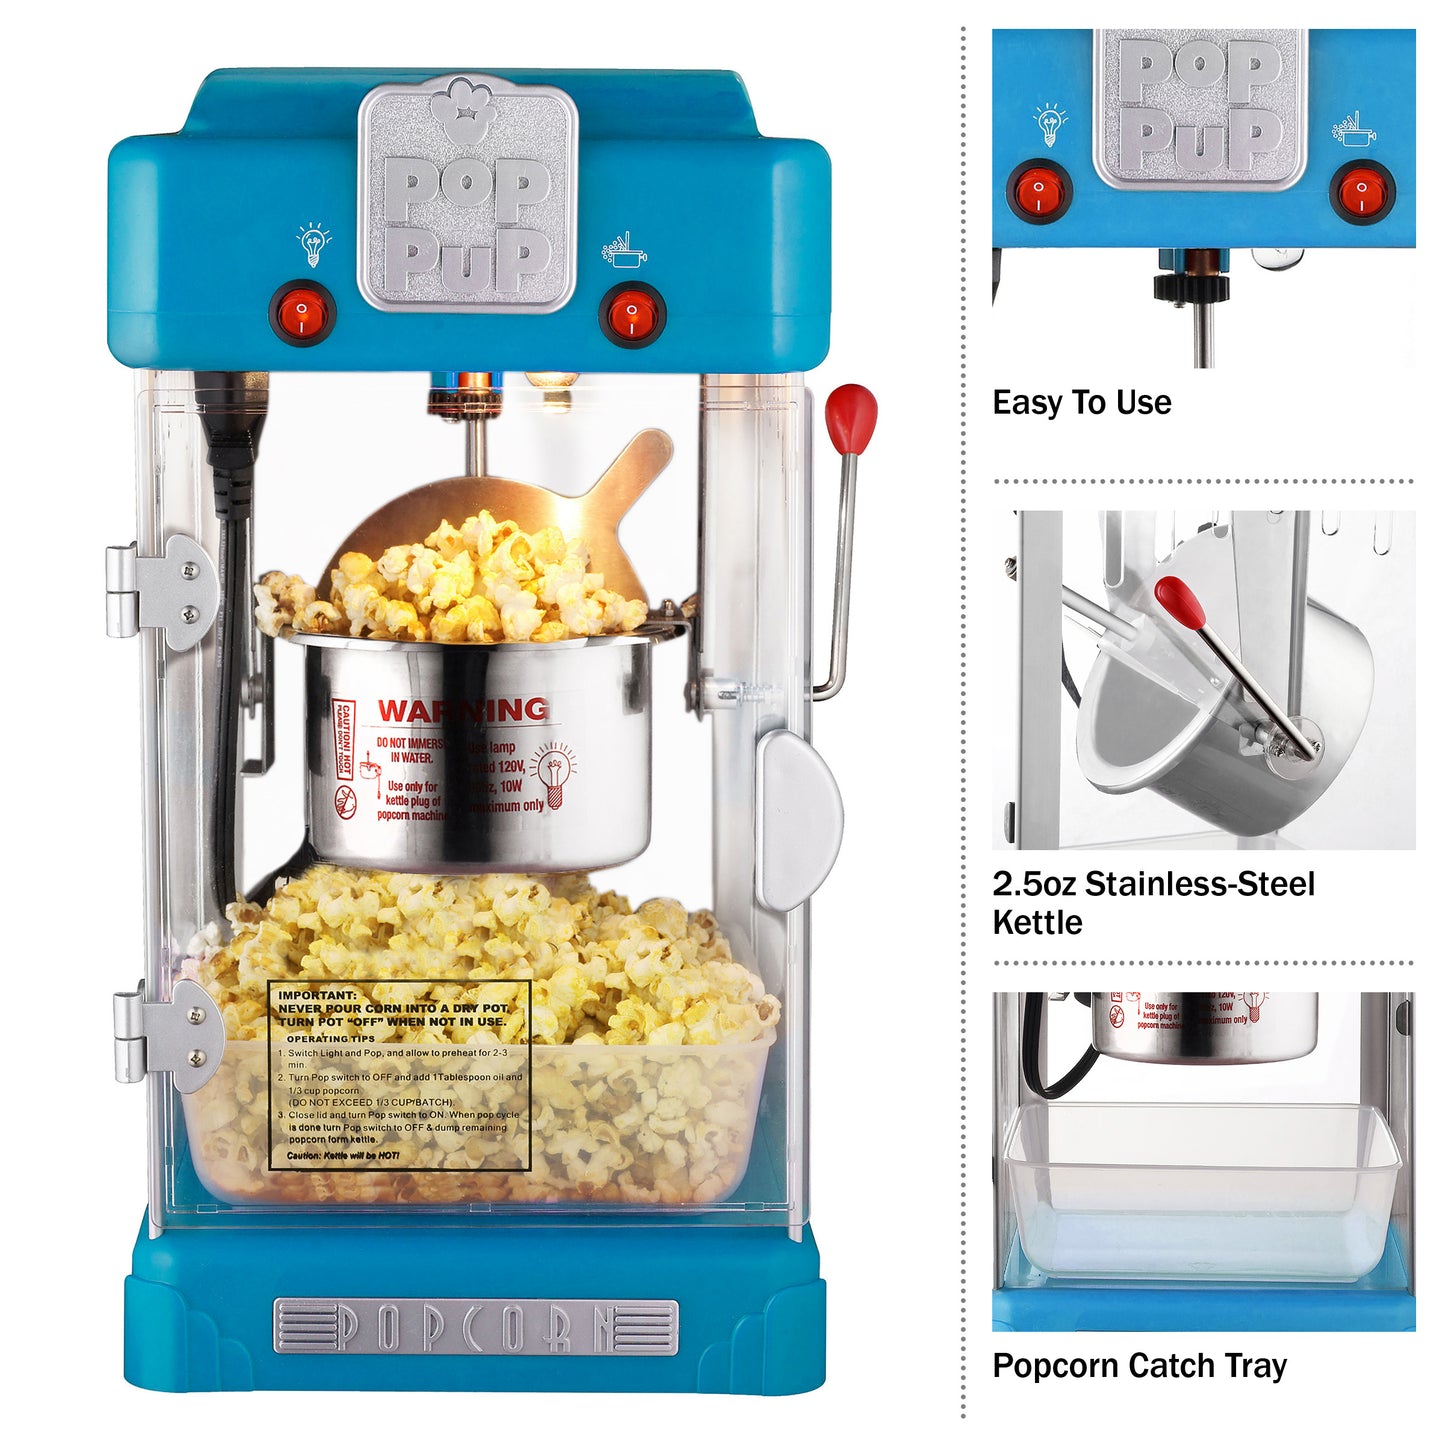 Pop Pup Countertop Popcorn Machine